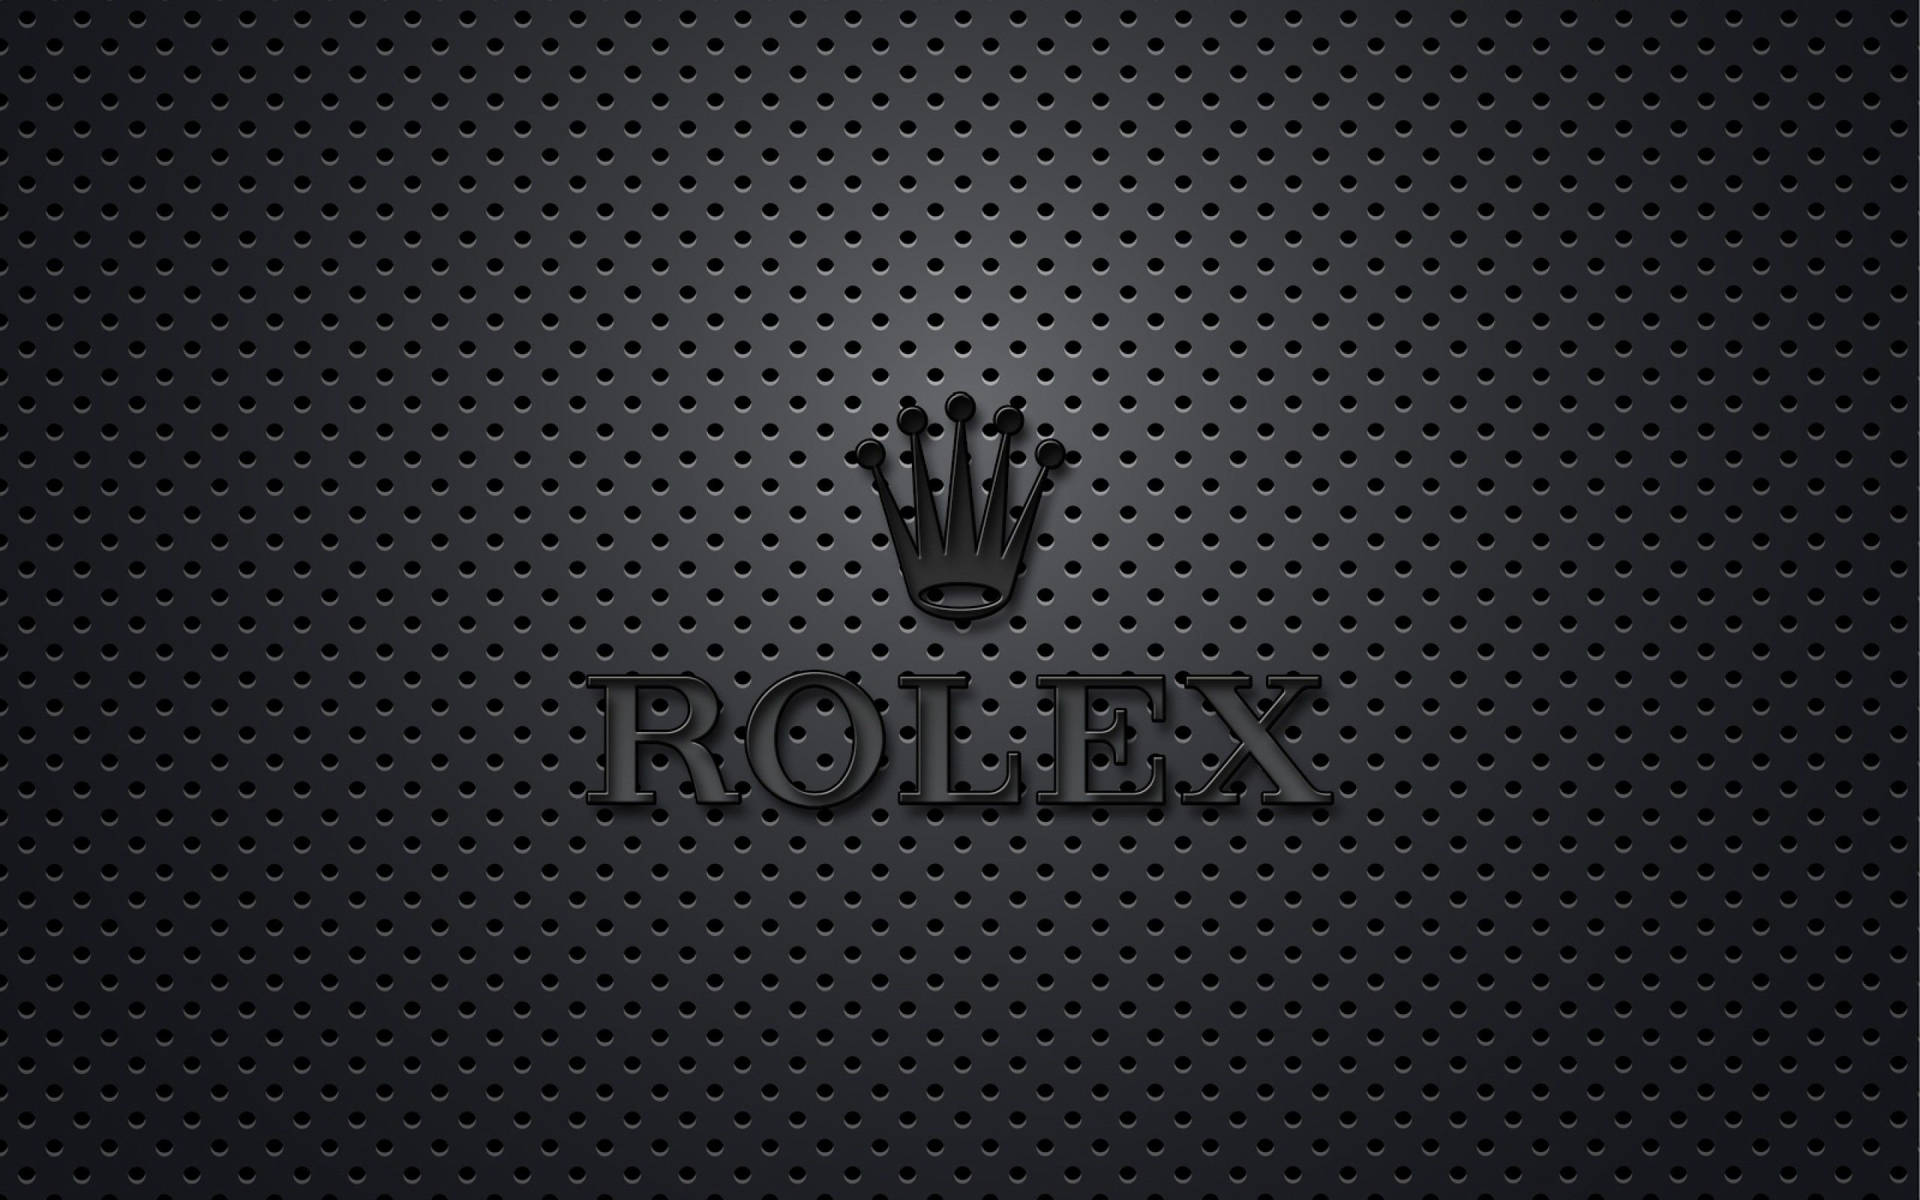 Rolex Wallpapers  Top 30 Best Rolex Wallpapers Download